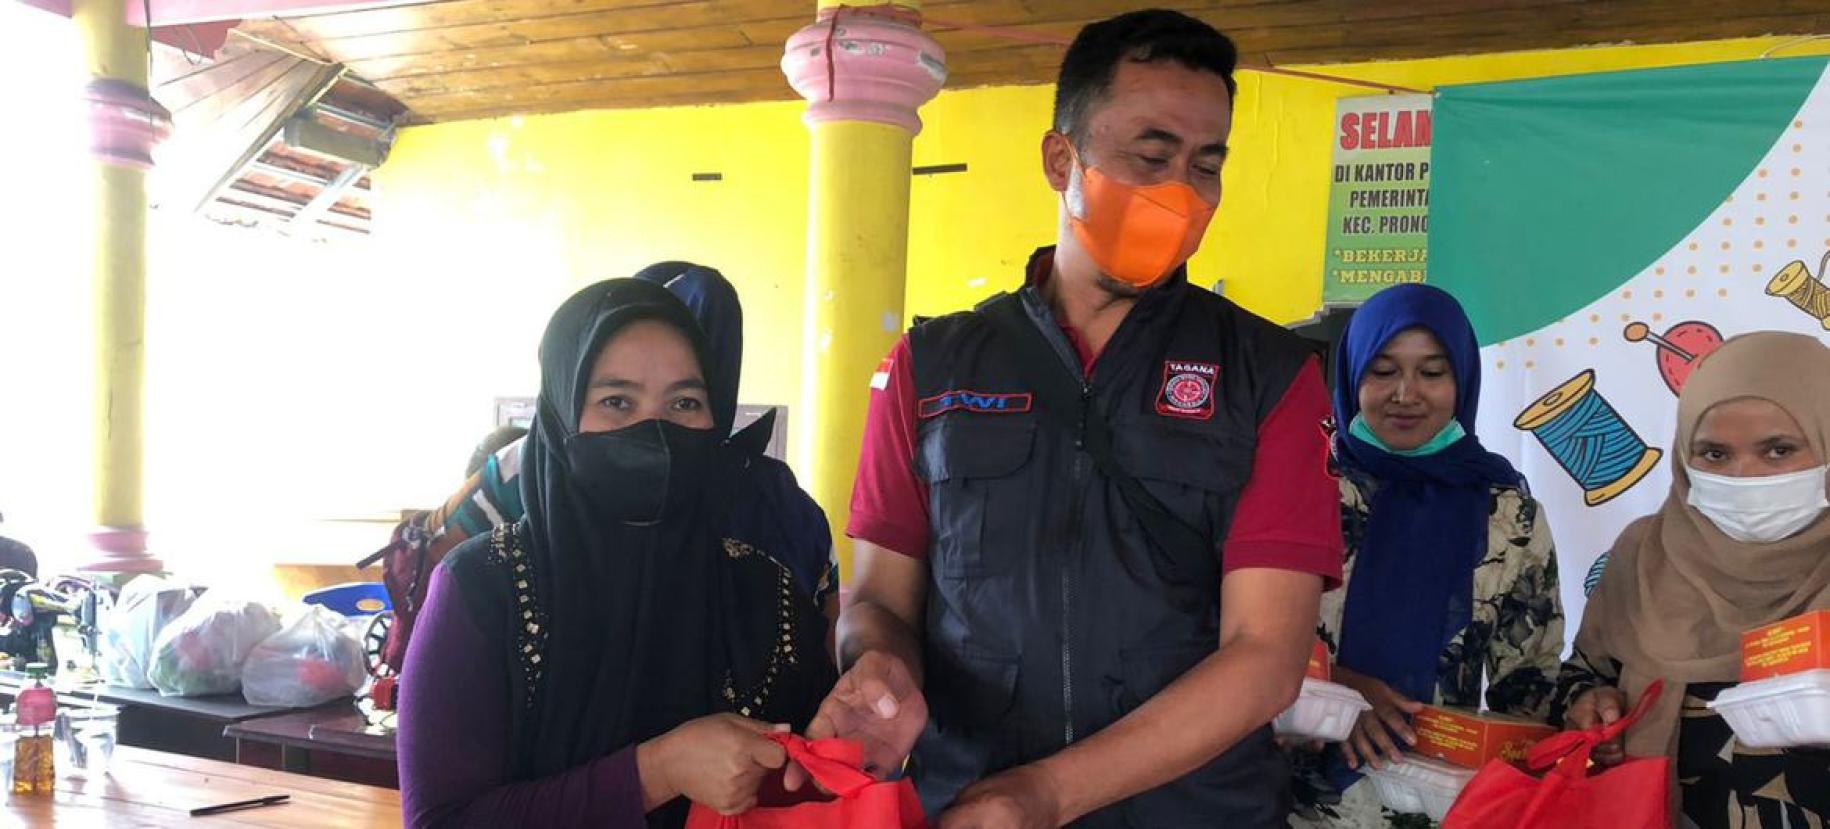 Мужчина и женщина в масках держат оборудование для оказания первой помощи.